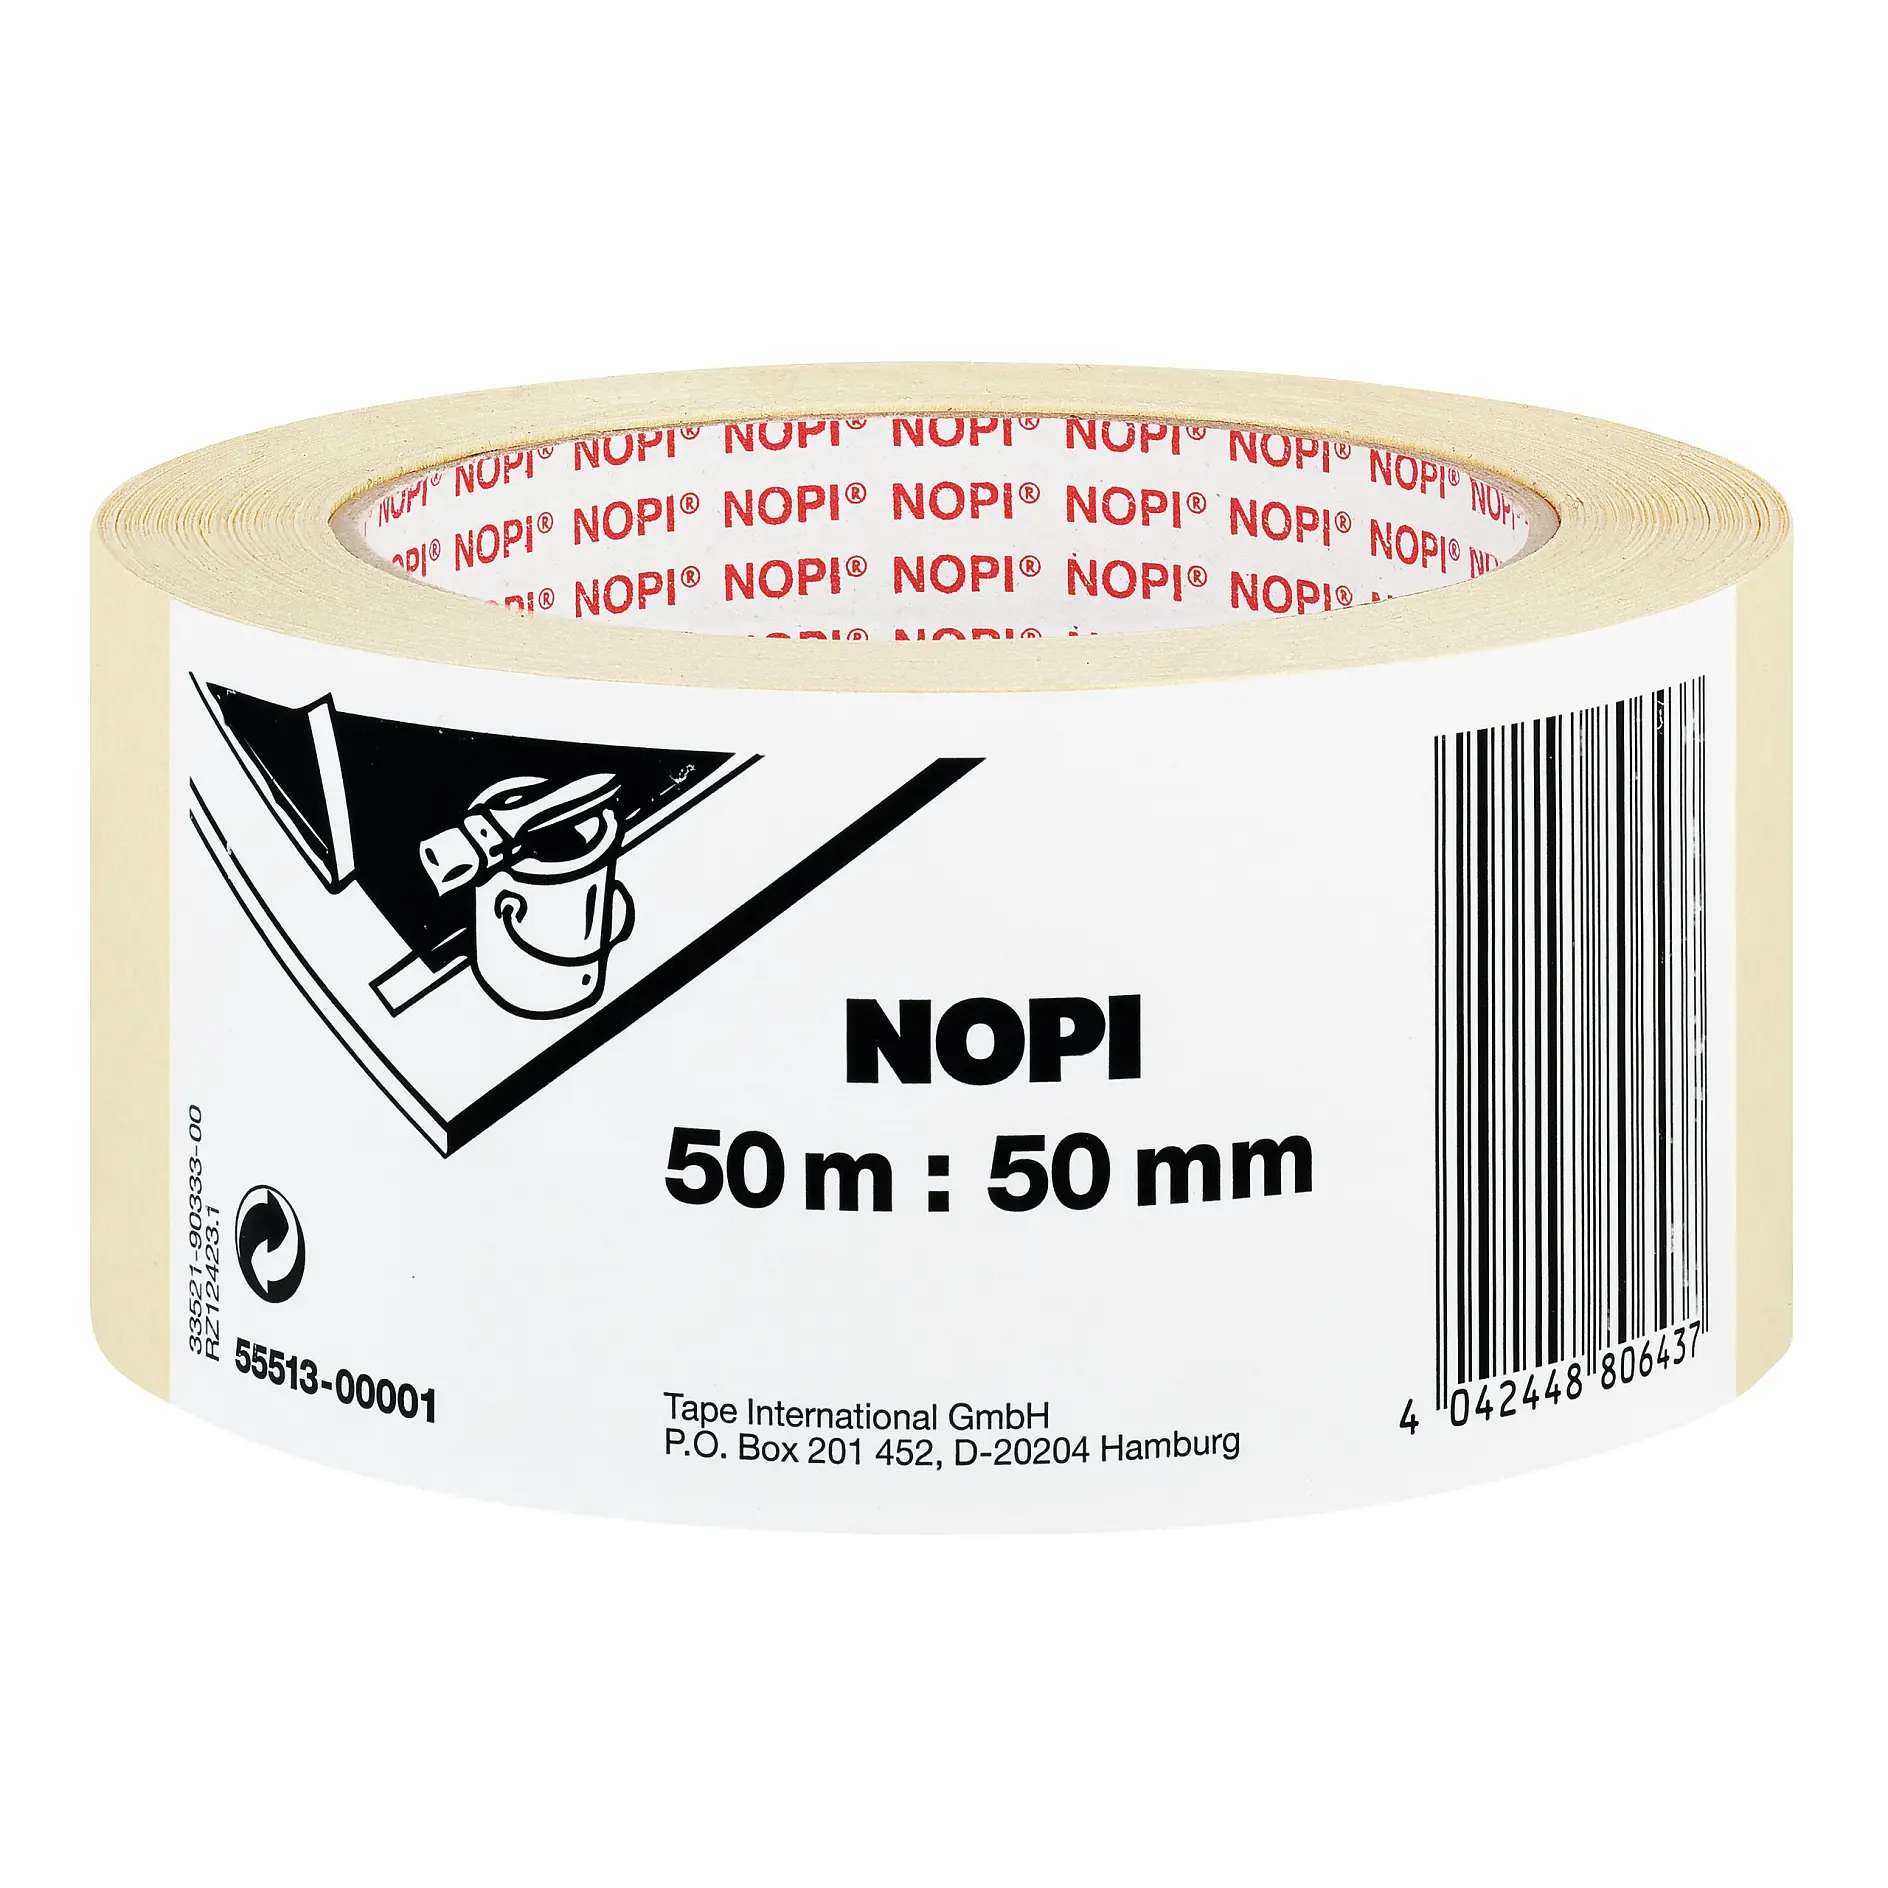 [en-en] NOPI masking tape 50m x 50mm